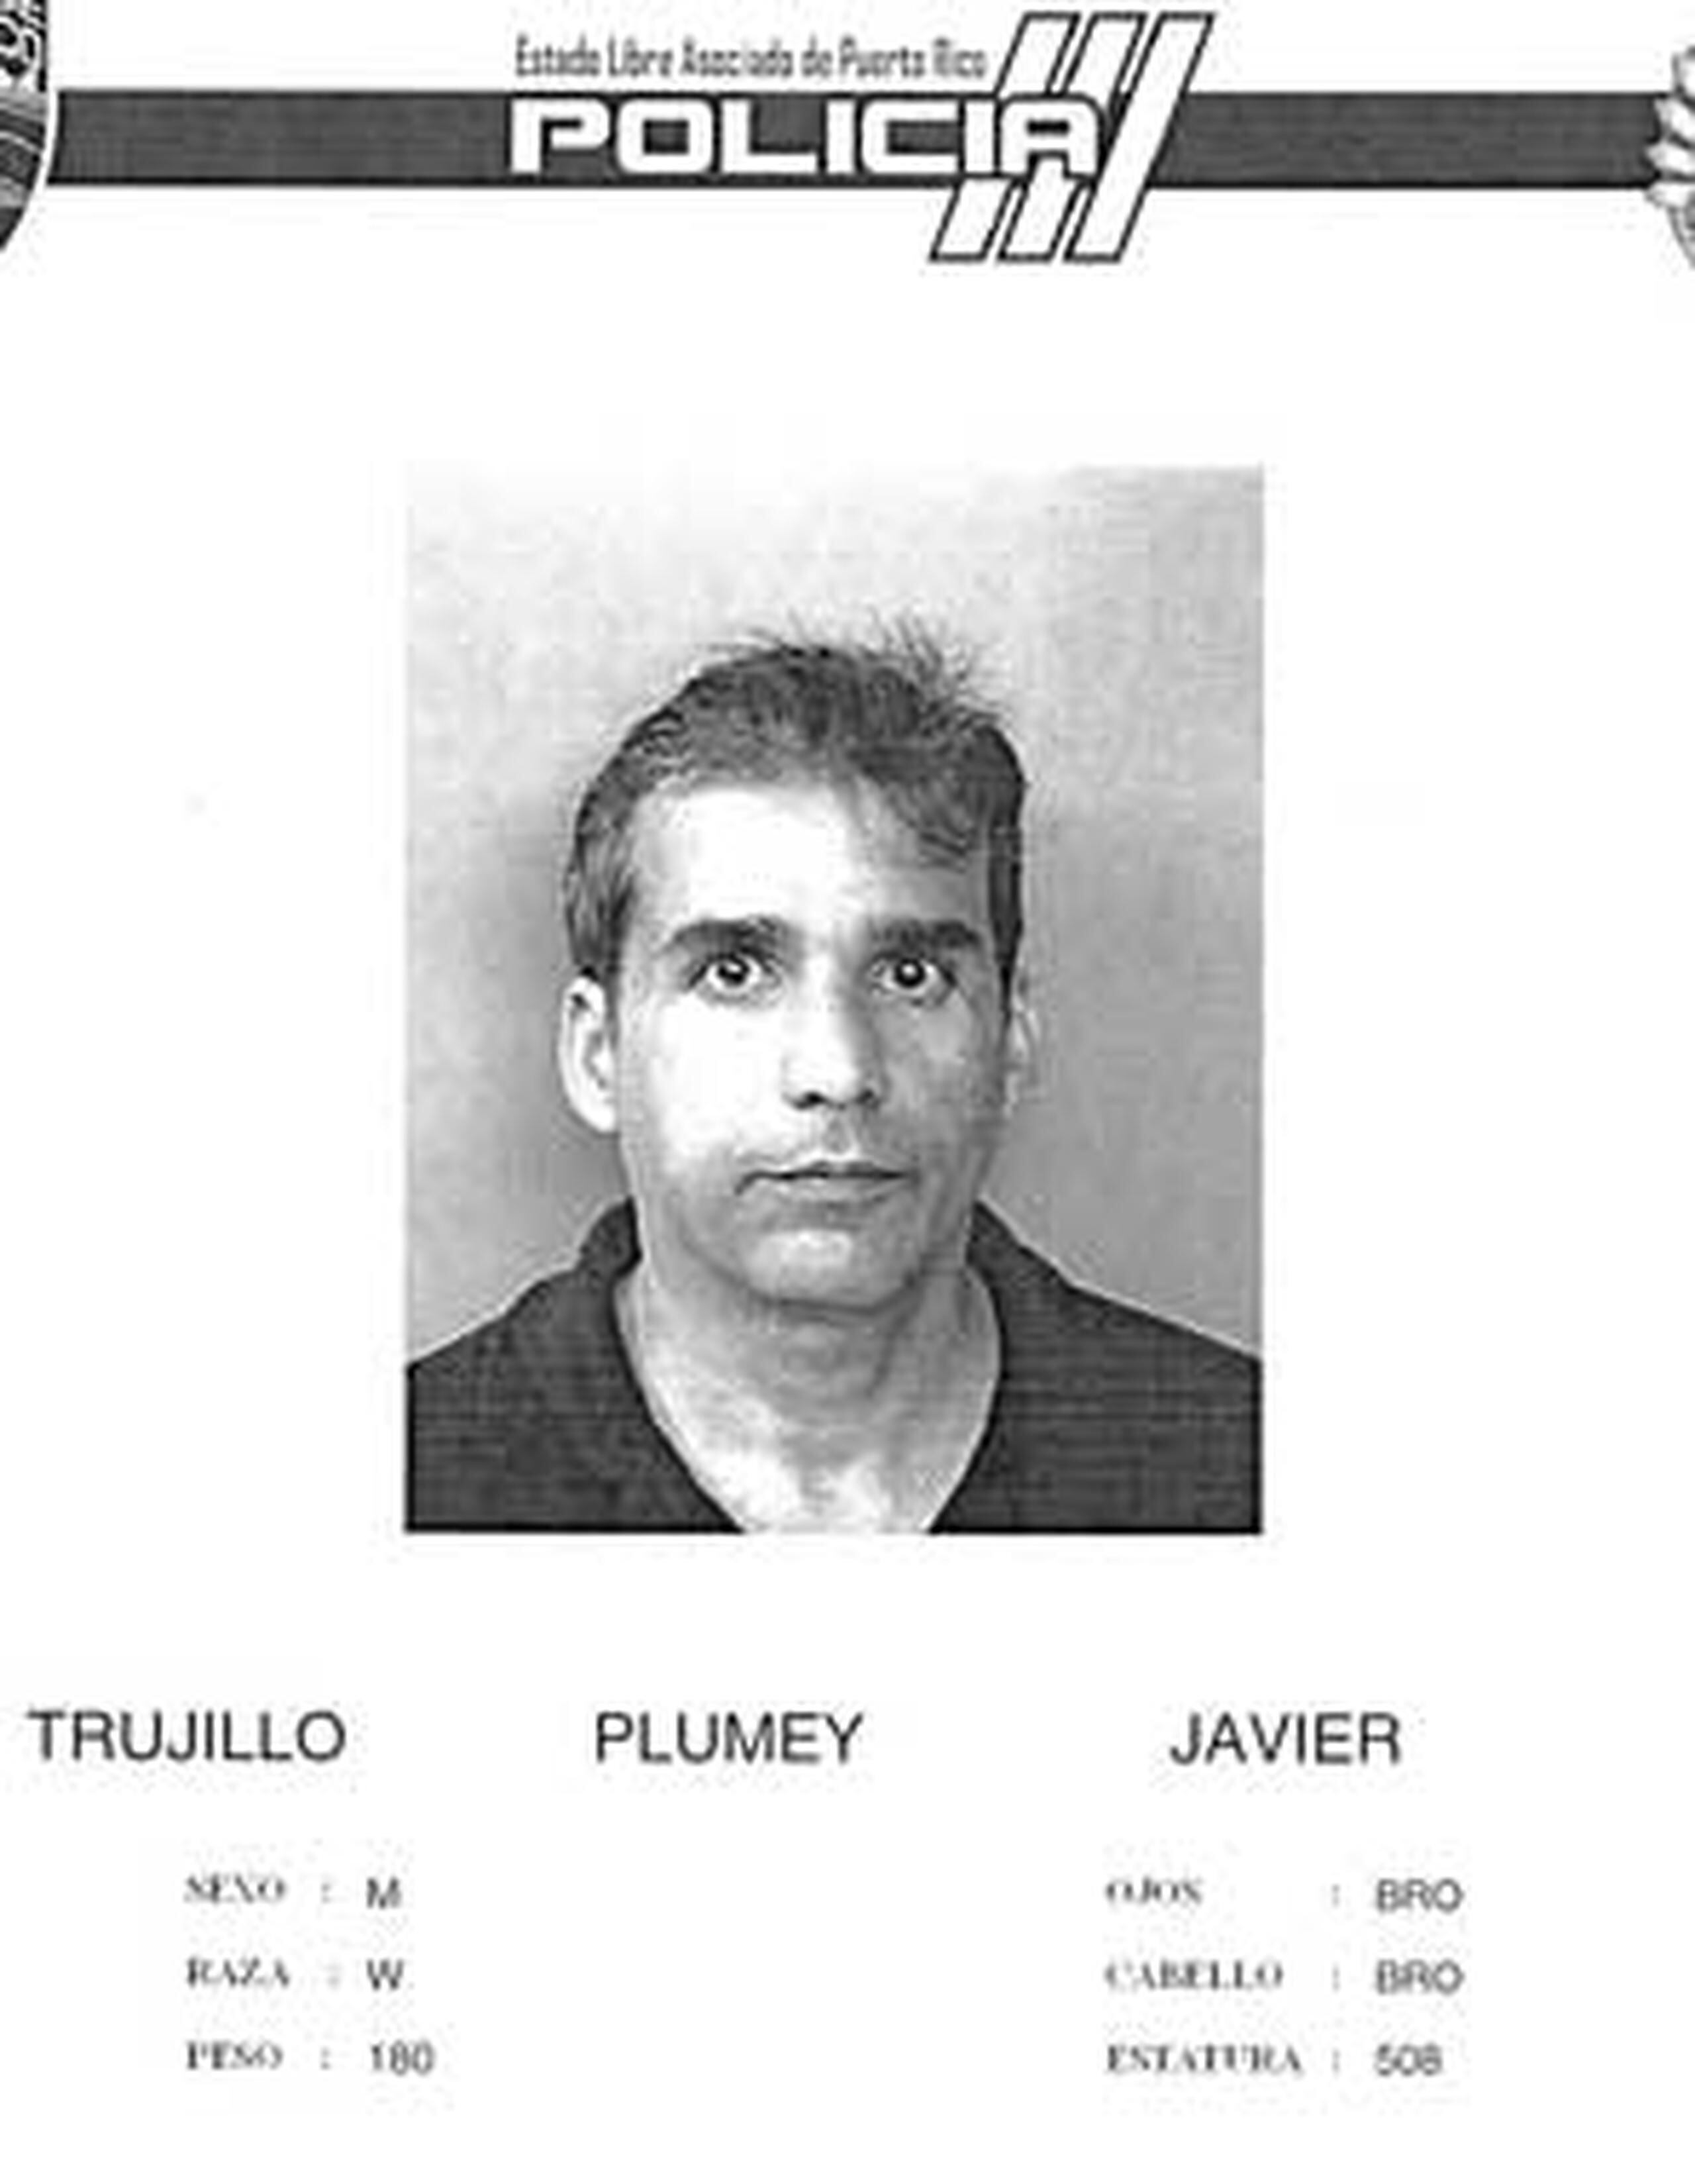 El acusado principal, el hijo del alcalde de Humacao Marcelo Trujillo Panisse, está sumariado. A sala no fueron los acusados ni sus familiares. (Suministrada)